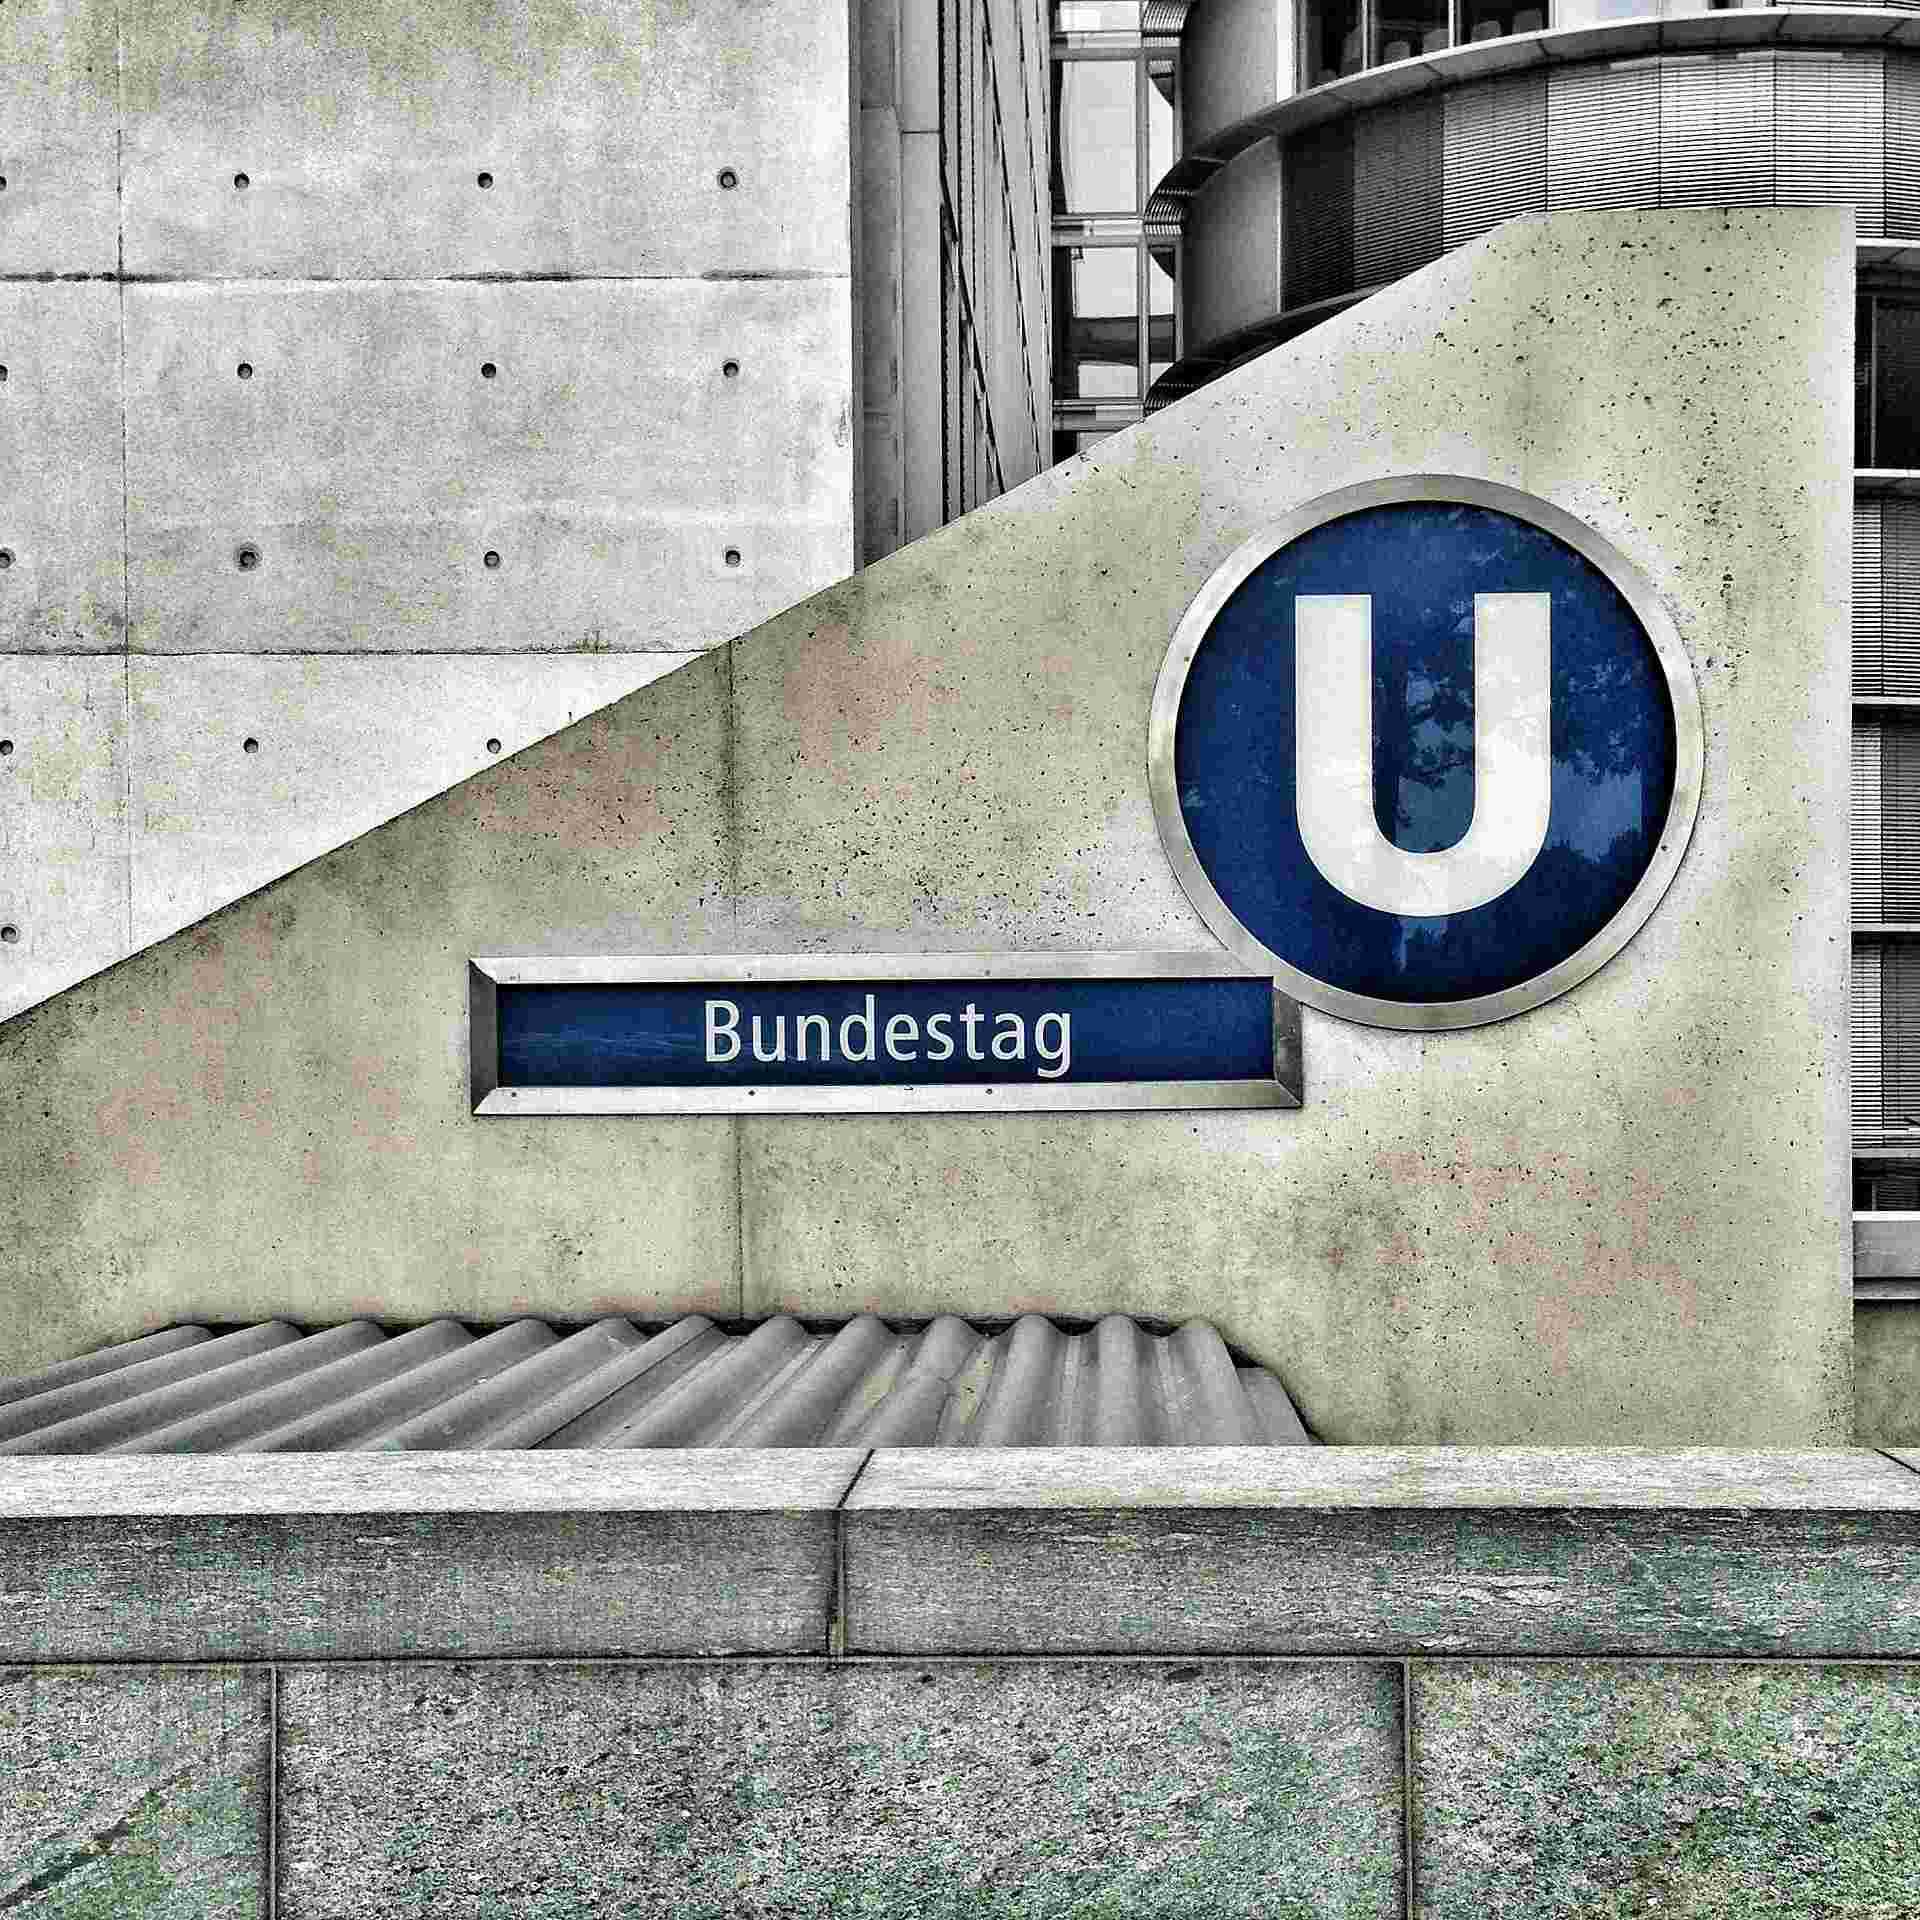 Ein Bild von der Berliner U-Bahn-Station Bundestag